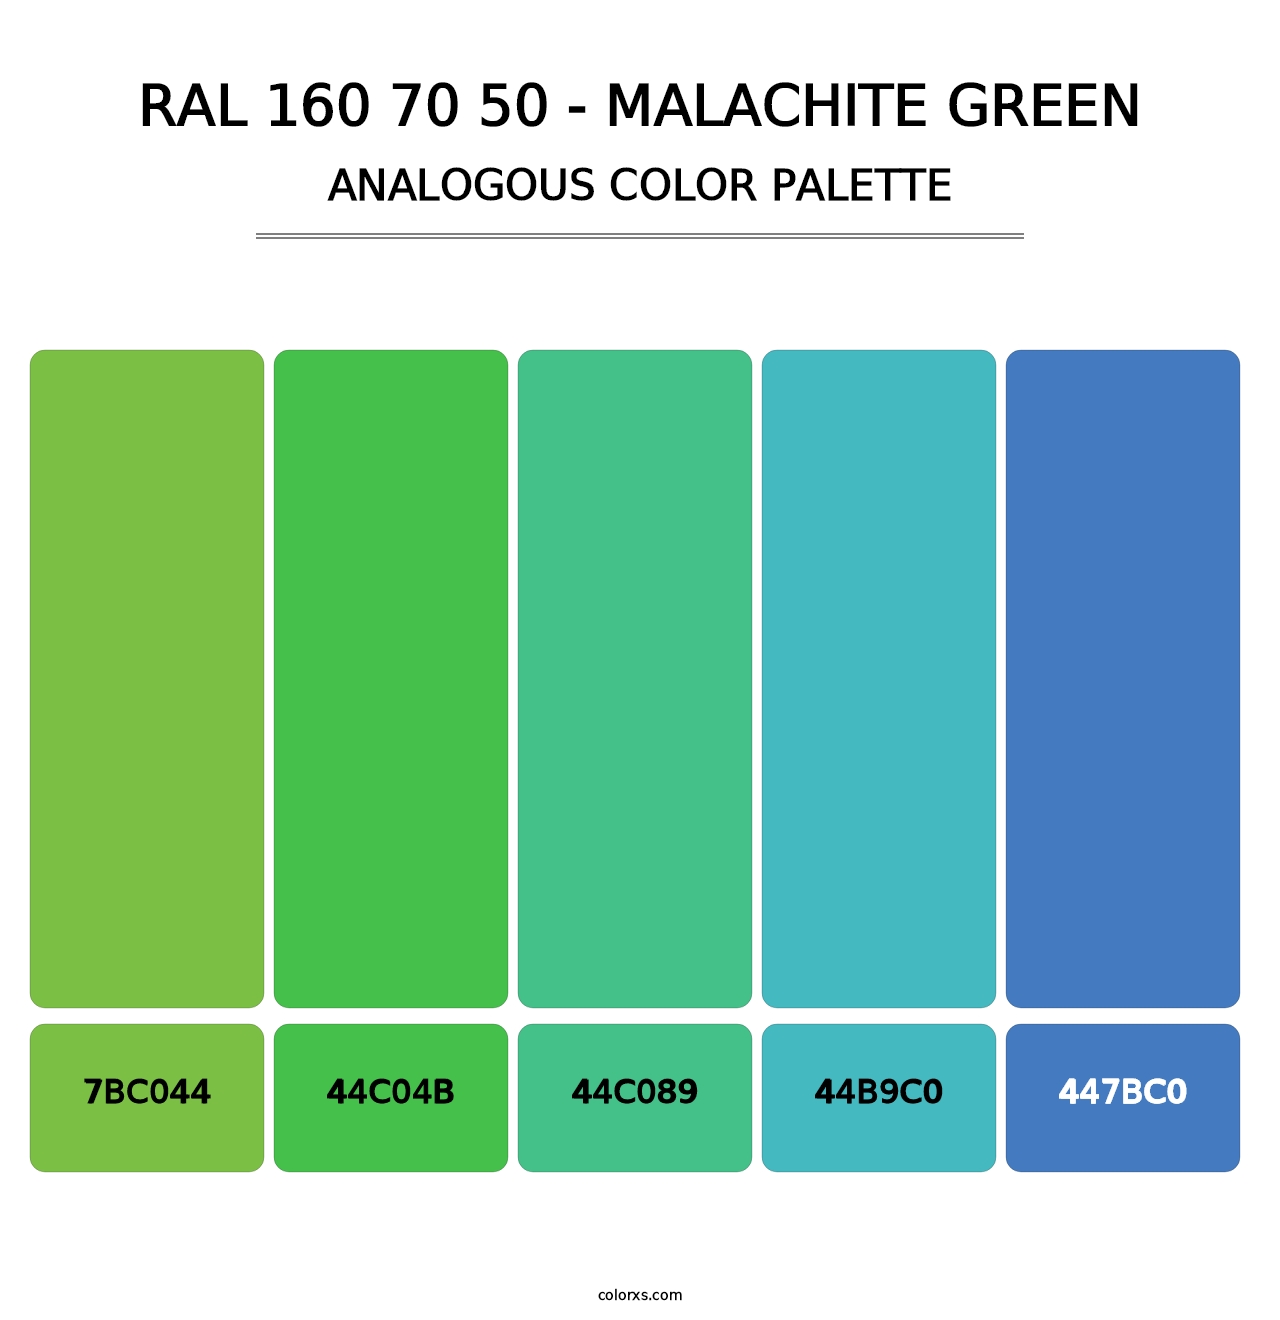 RAL 160 70 50 - Malachite Green - Analogous Color Palette